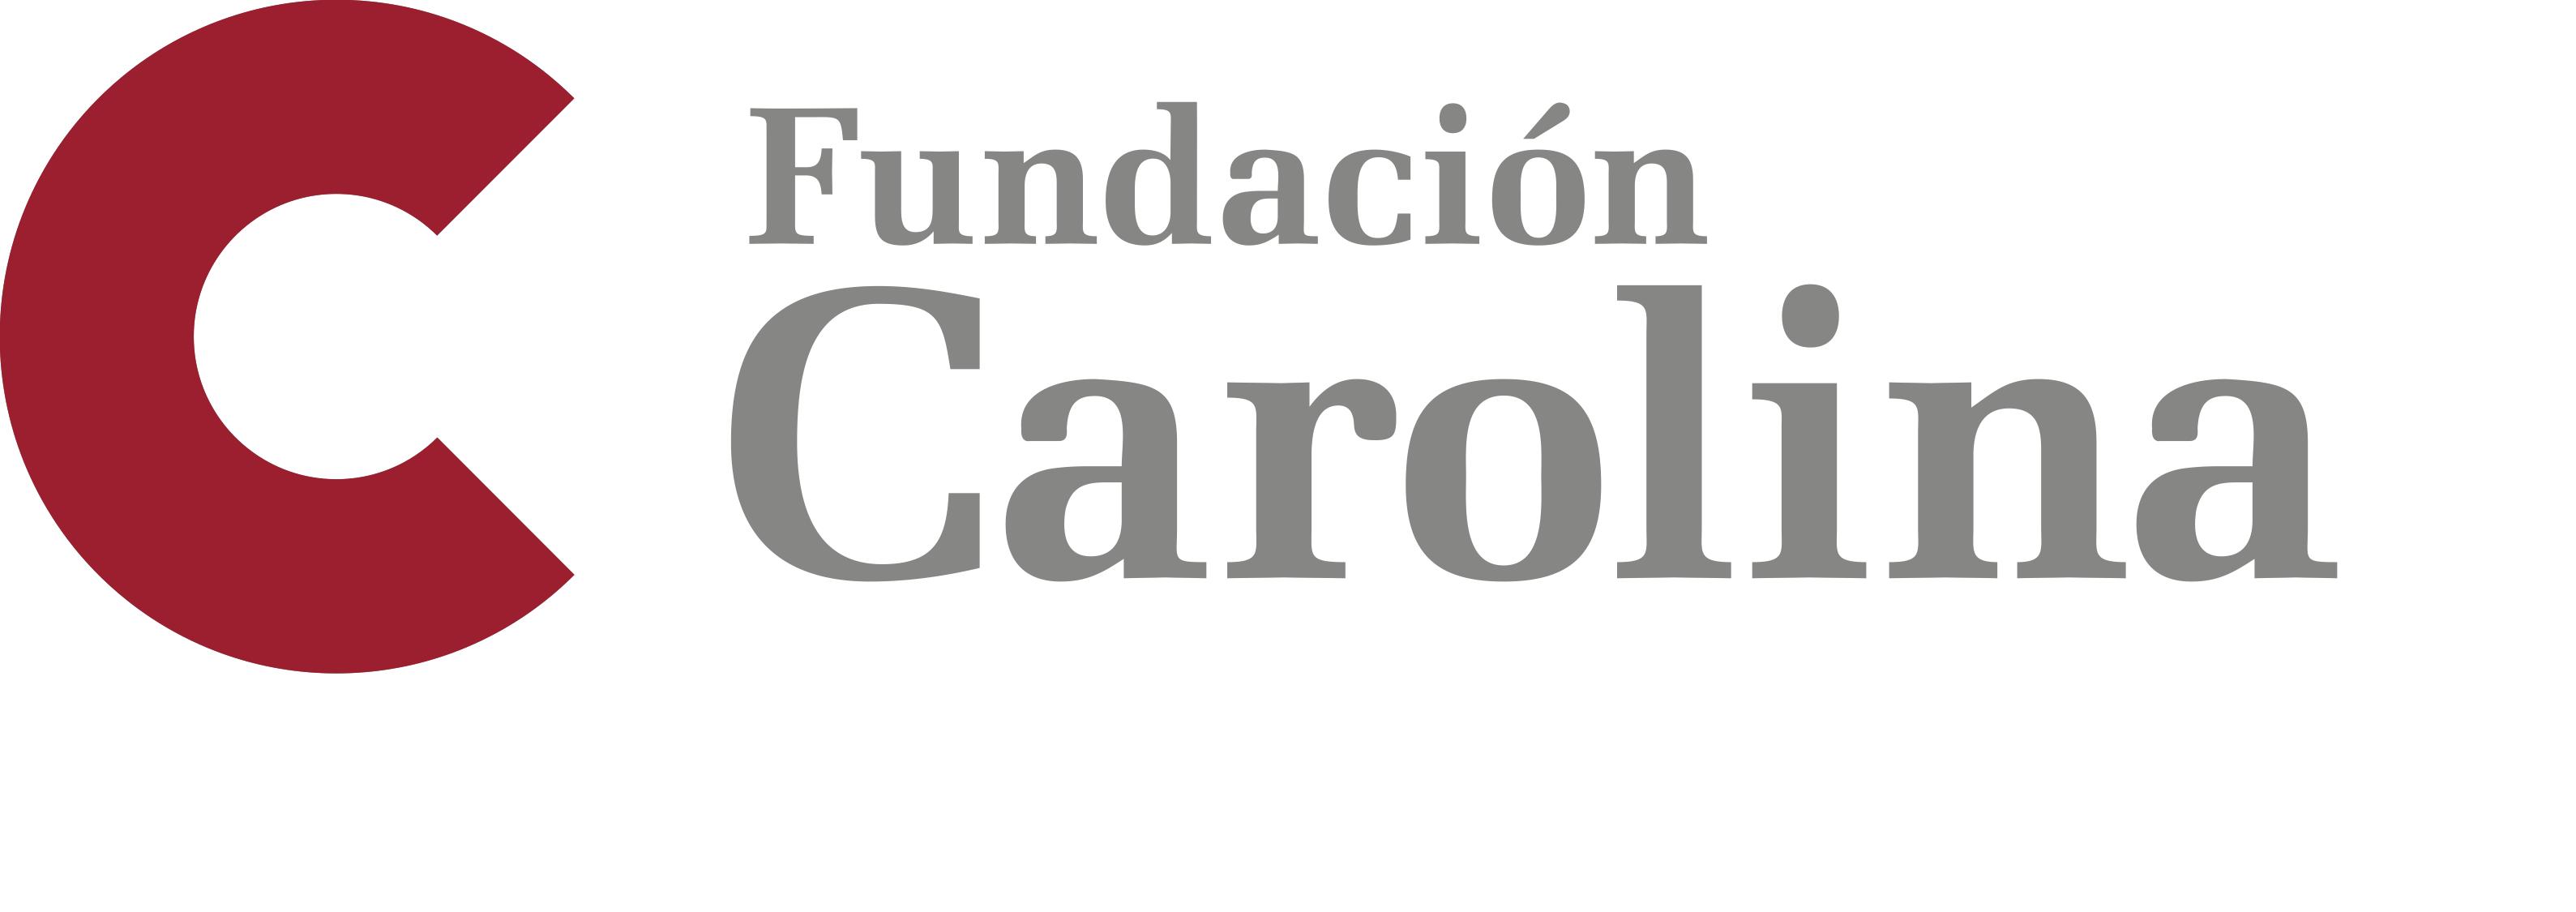 Fundación Carolina Logo